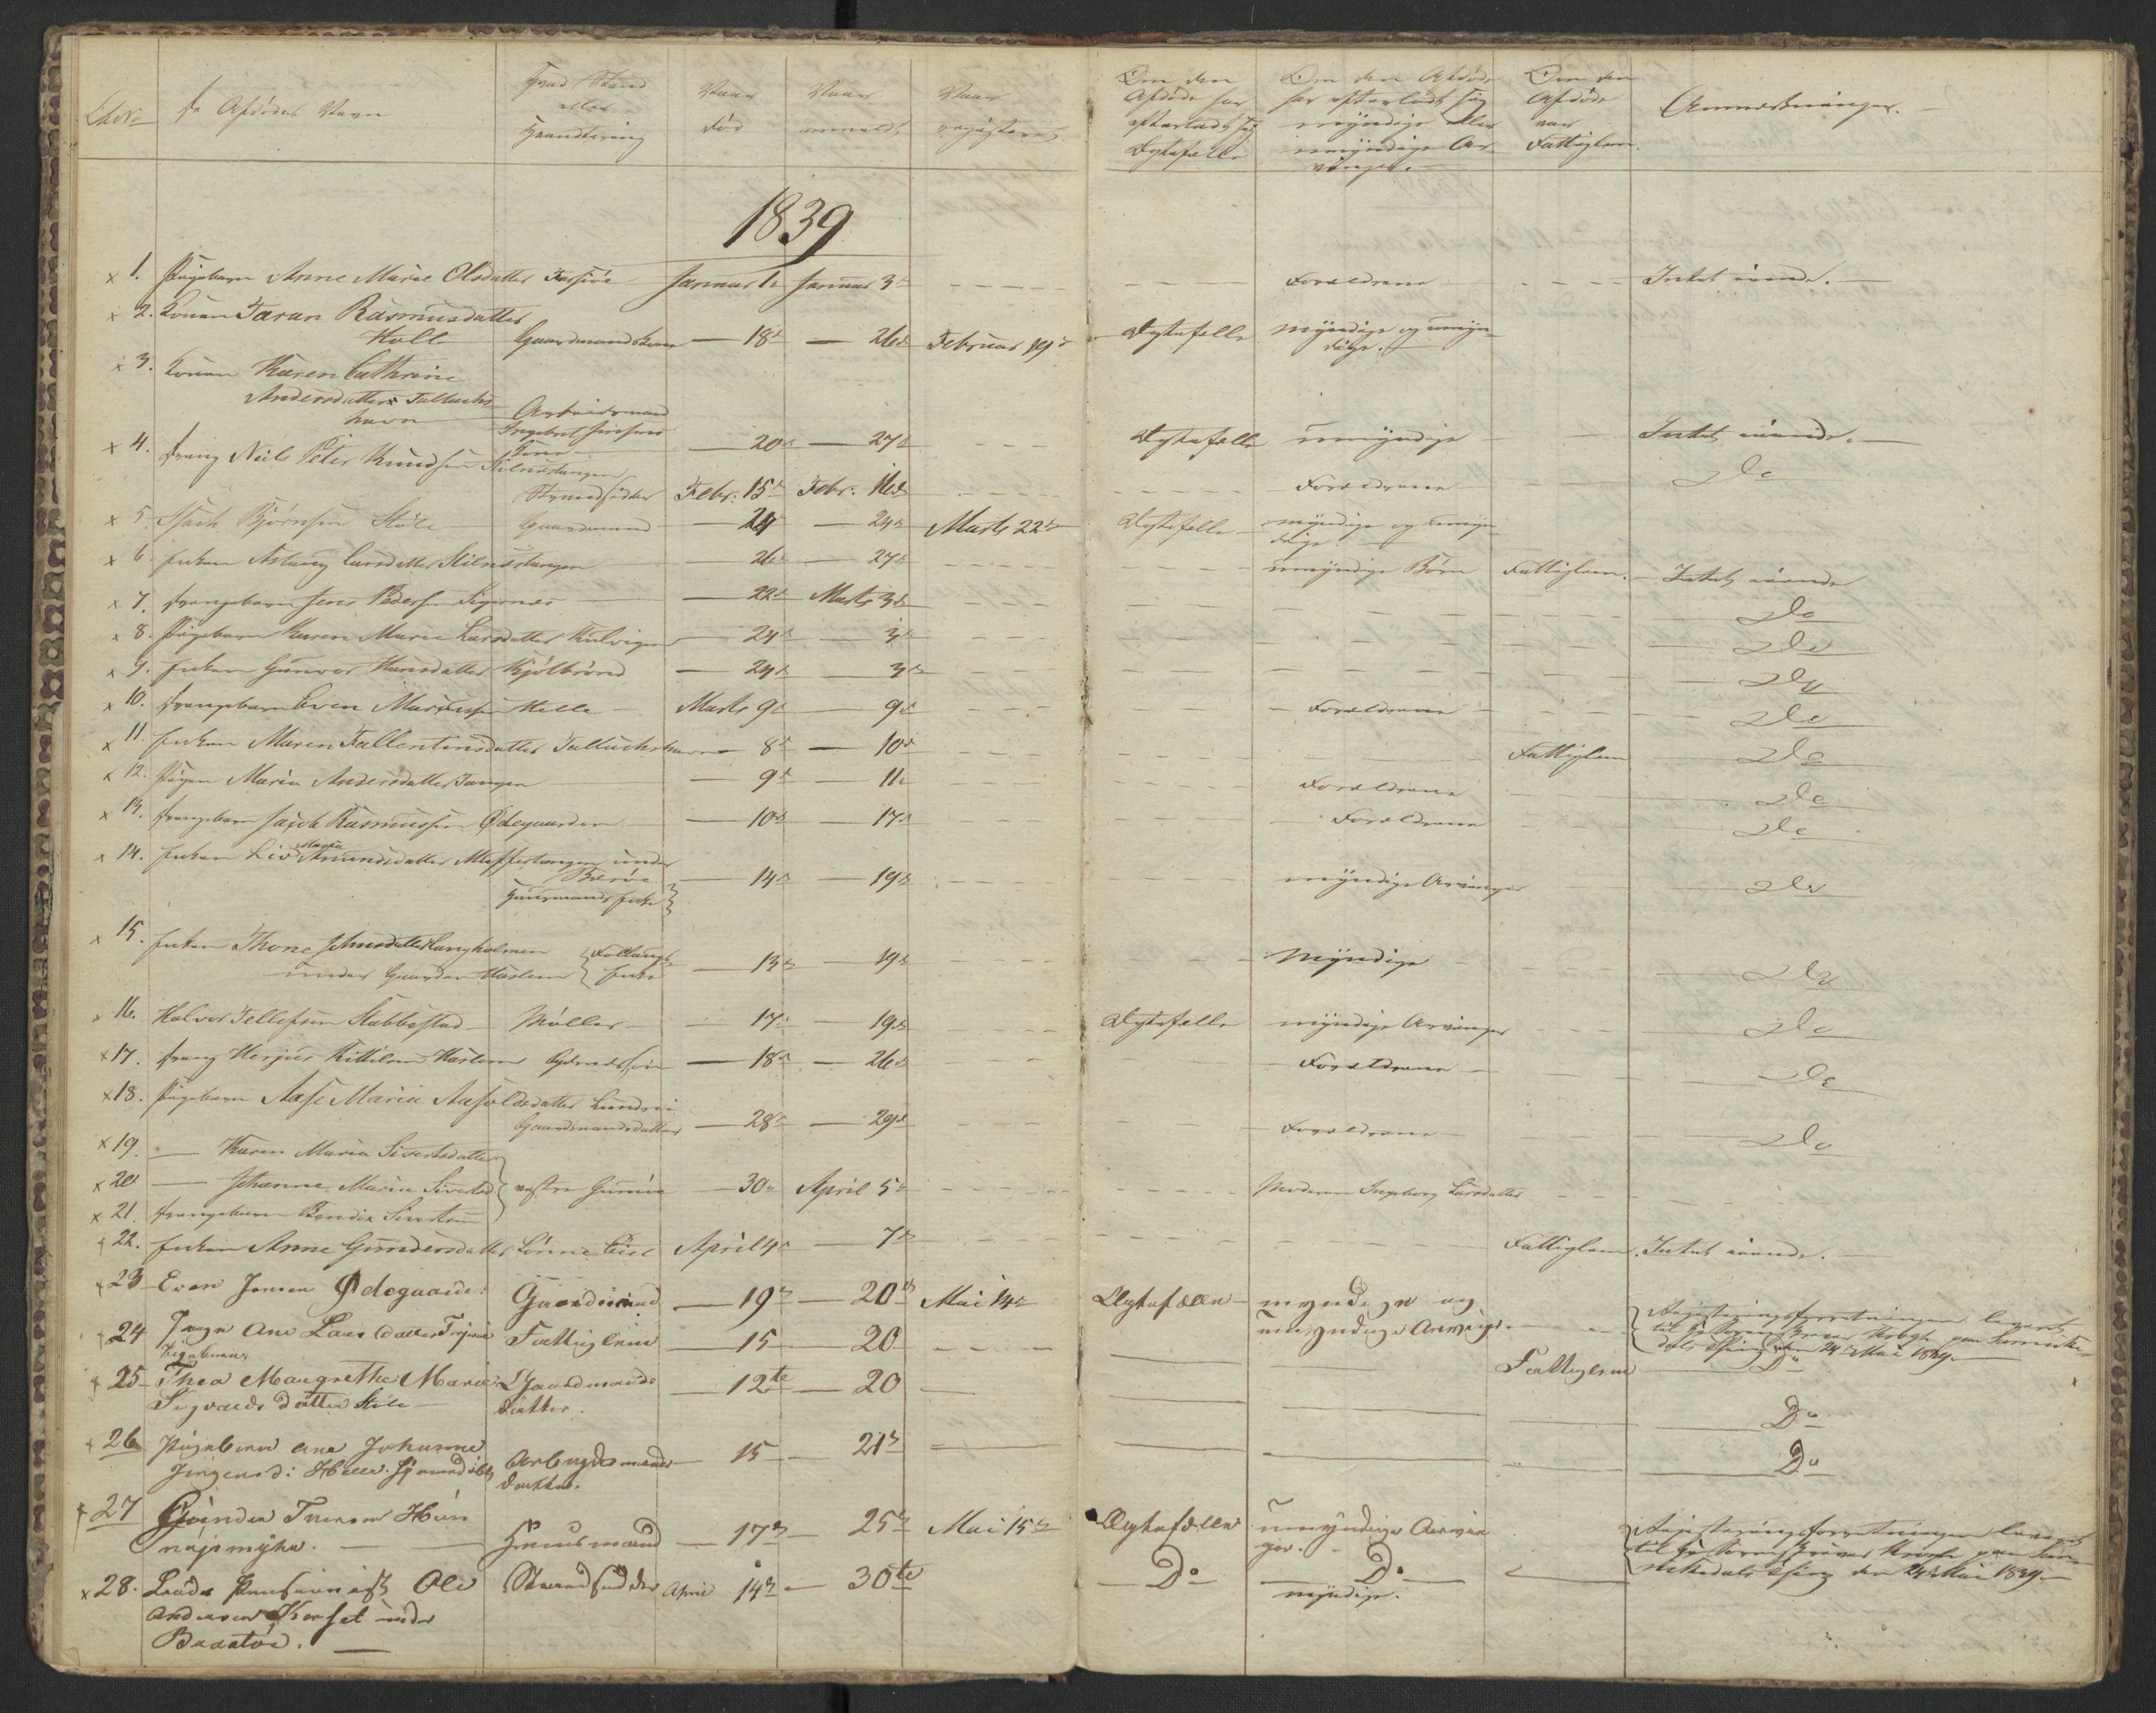 Sannidal lensmannskontor, SAKO/A-569/H/Ha/L0001: Dødsanmeldelsesprotokoll, 1837-1859